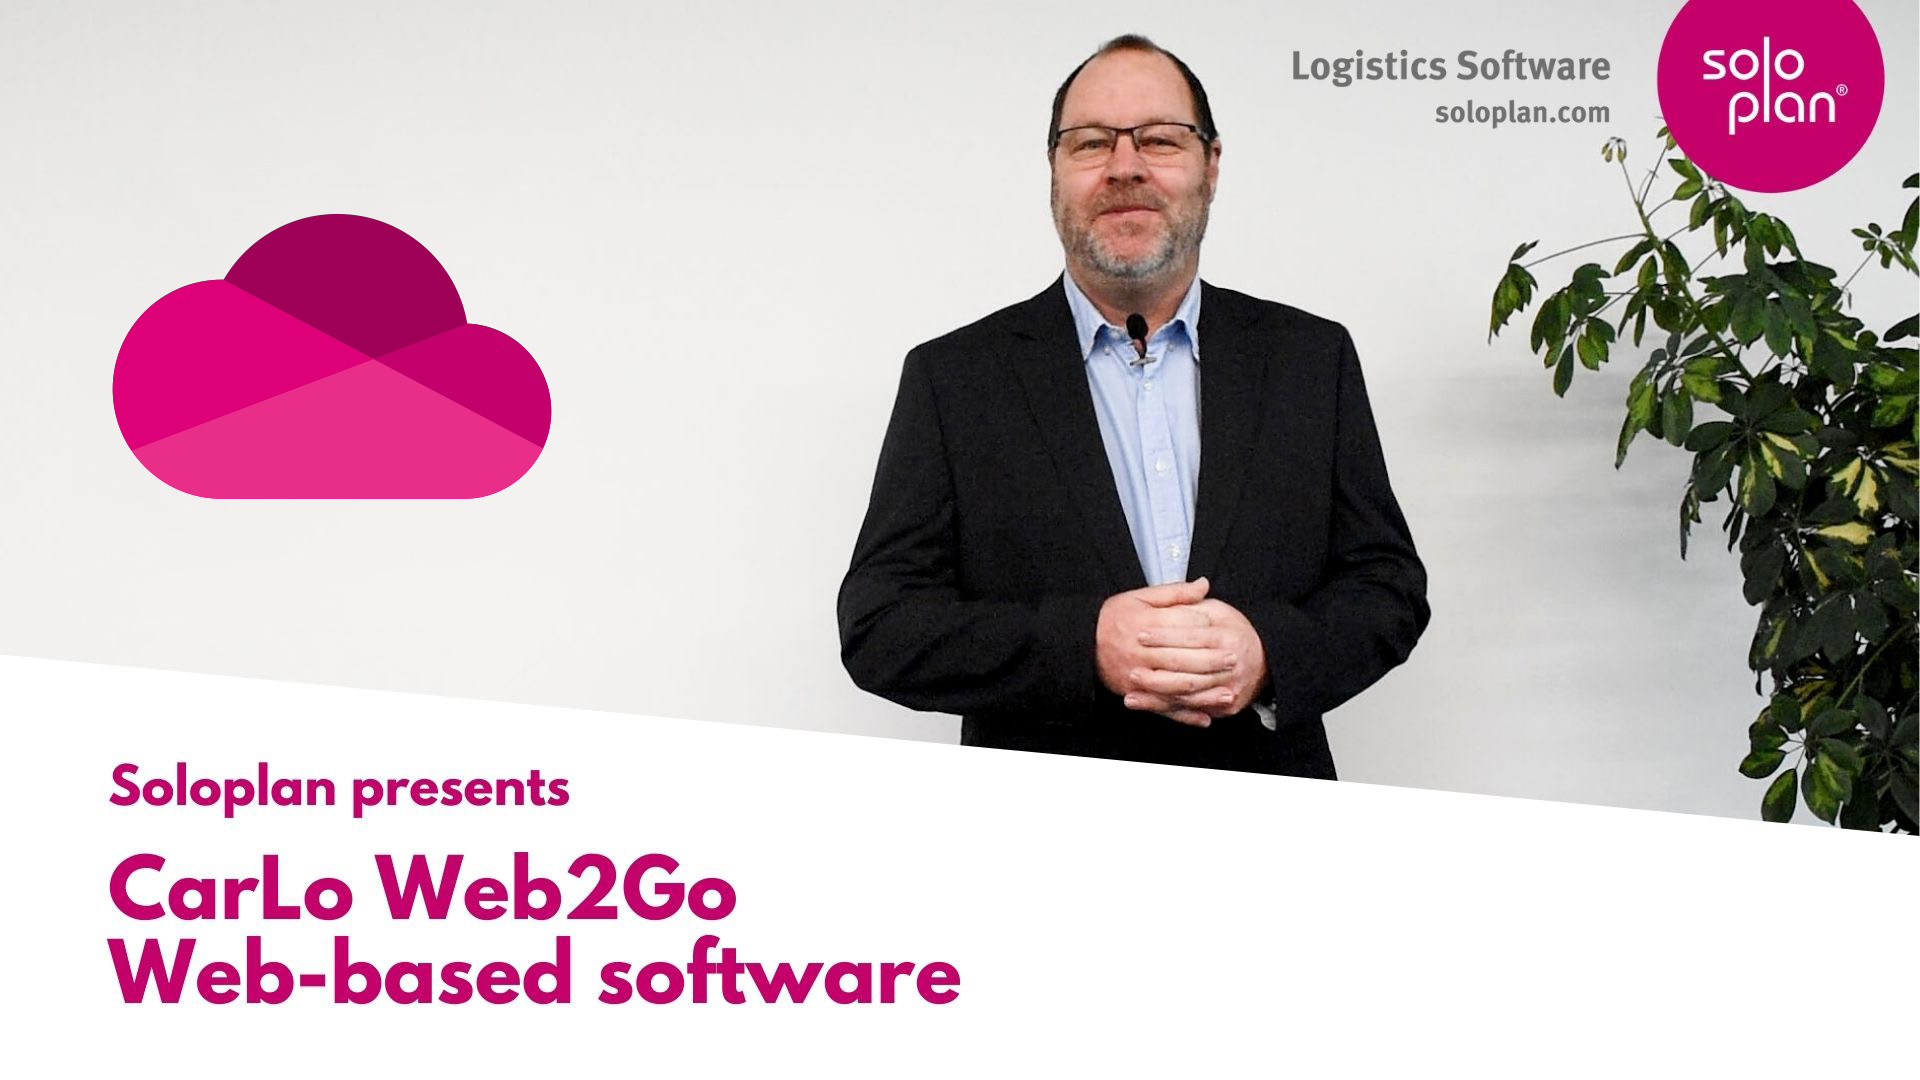  CarLo Web2Go - internetowe oprogramowanie logistyczne